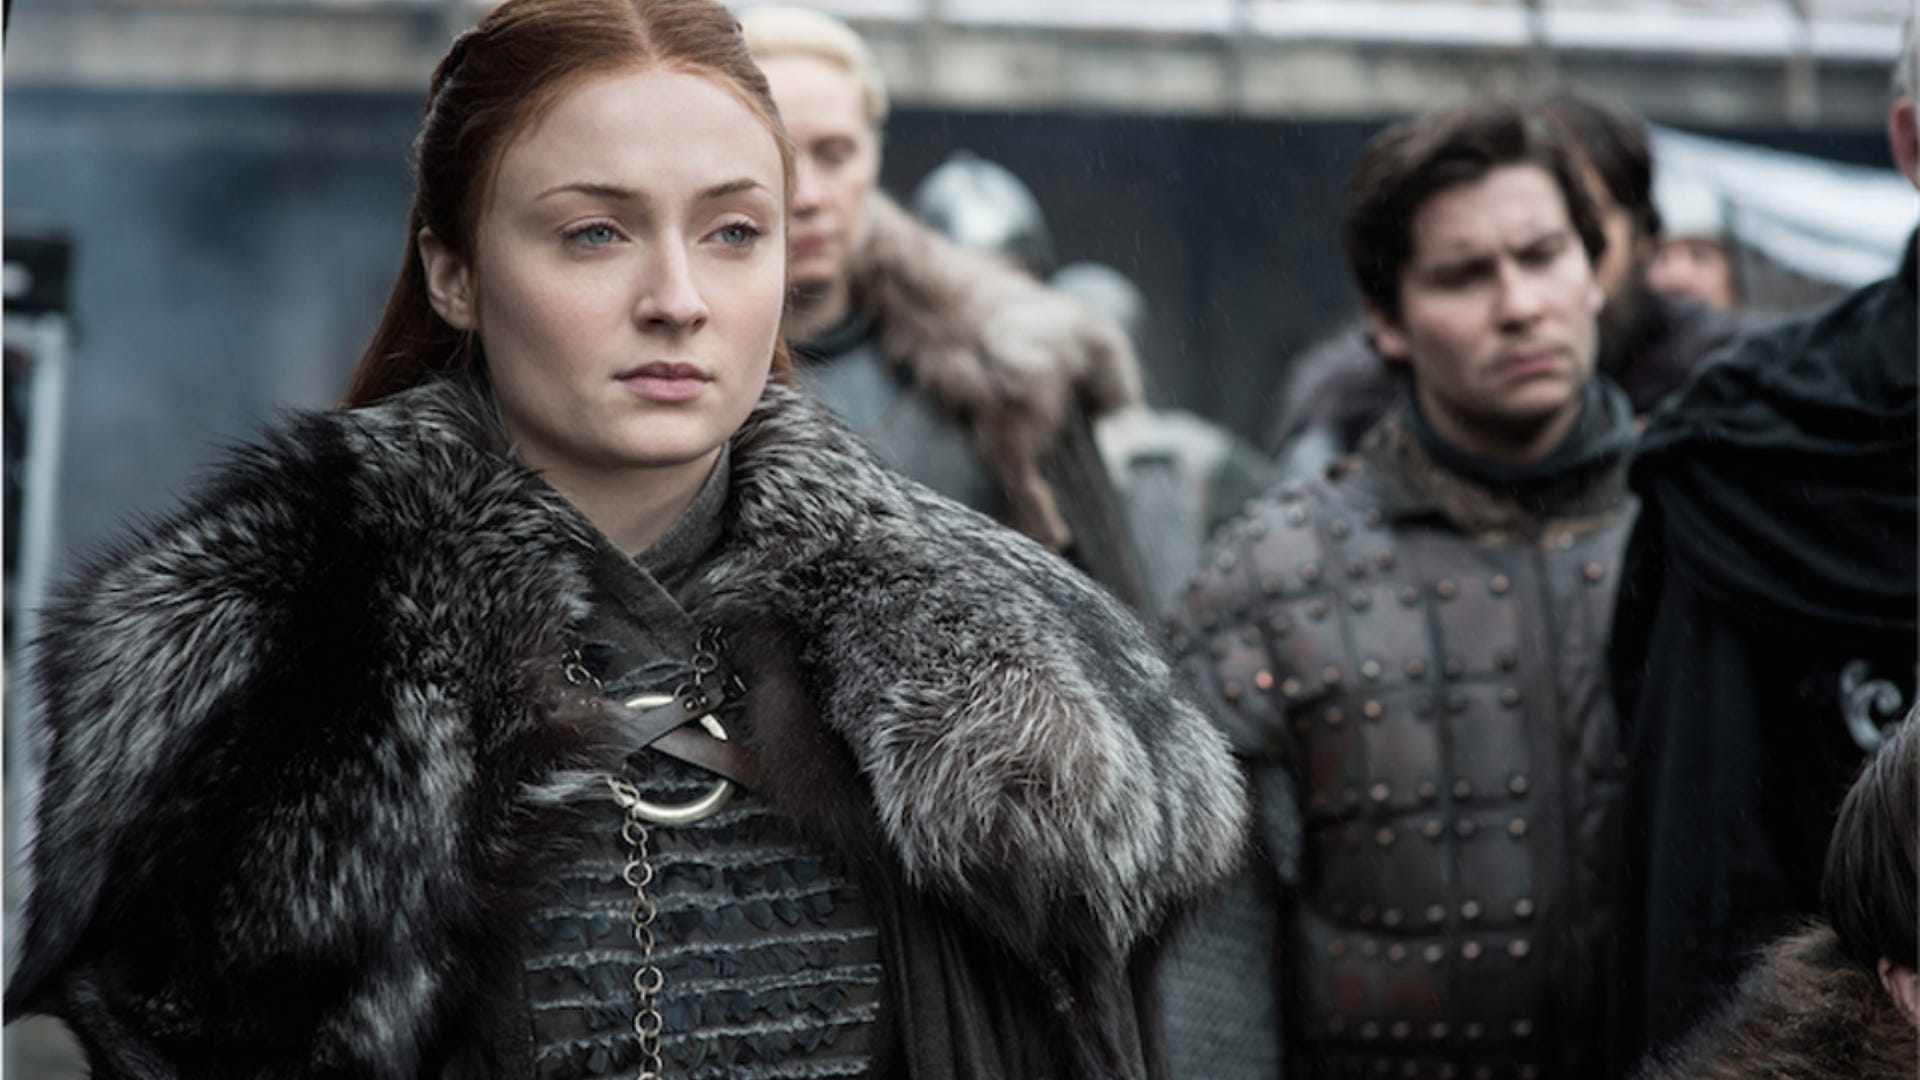 Sansa Stark (Sophie Turner) on Game of Thrones